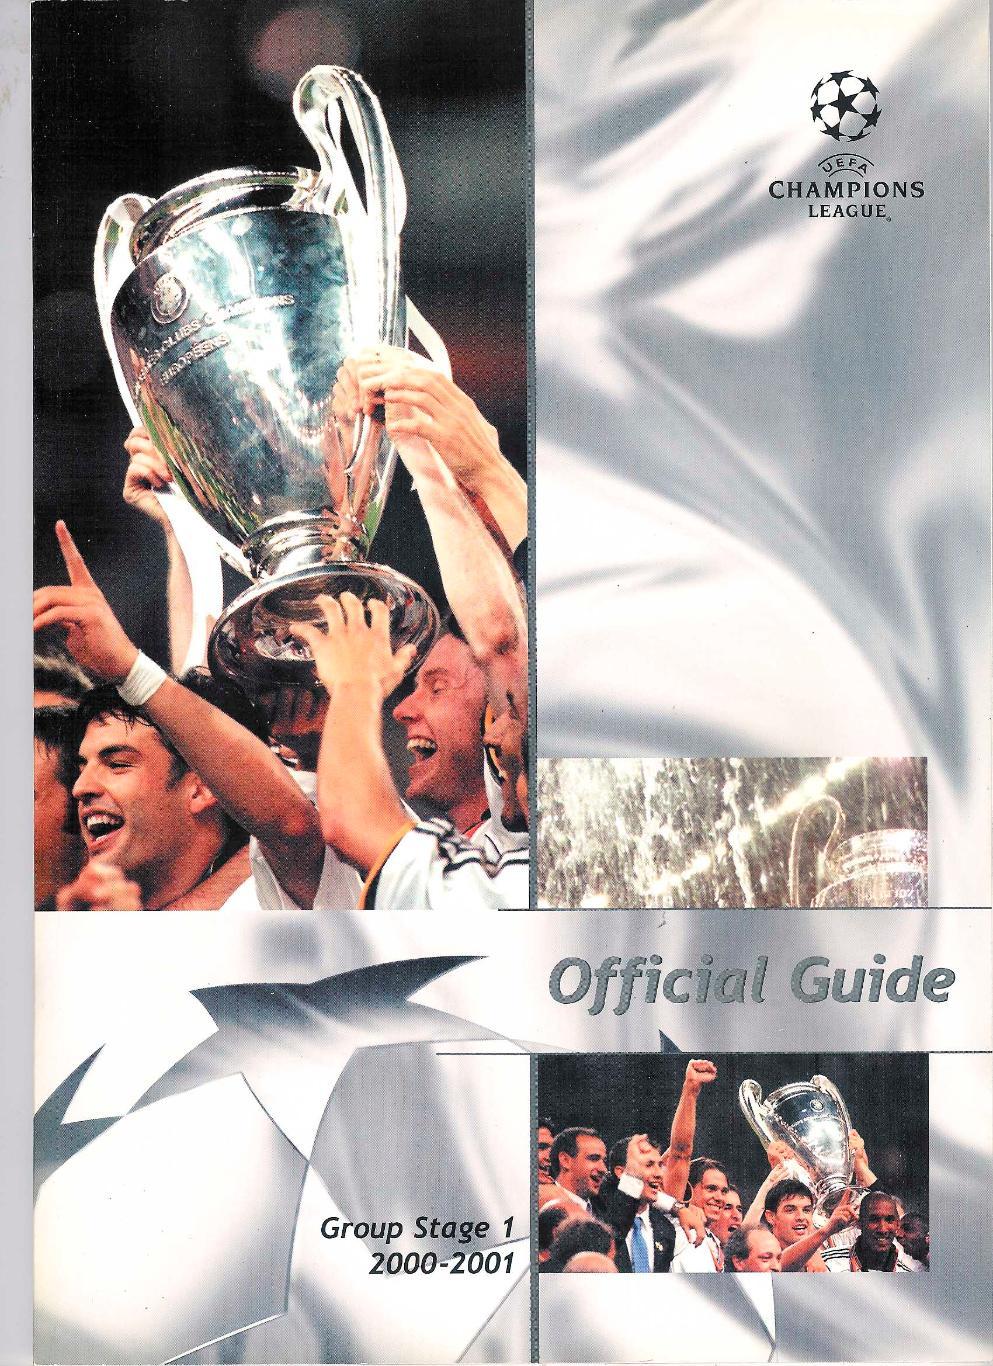 Лига Чемпионов 2000-01, журнал-альбом (guide), групповая стадия 1.